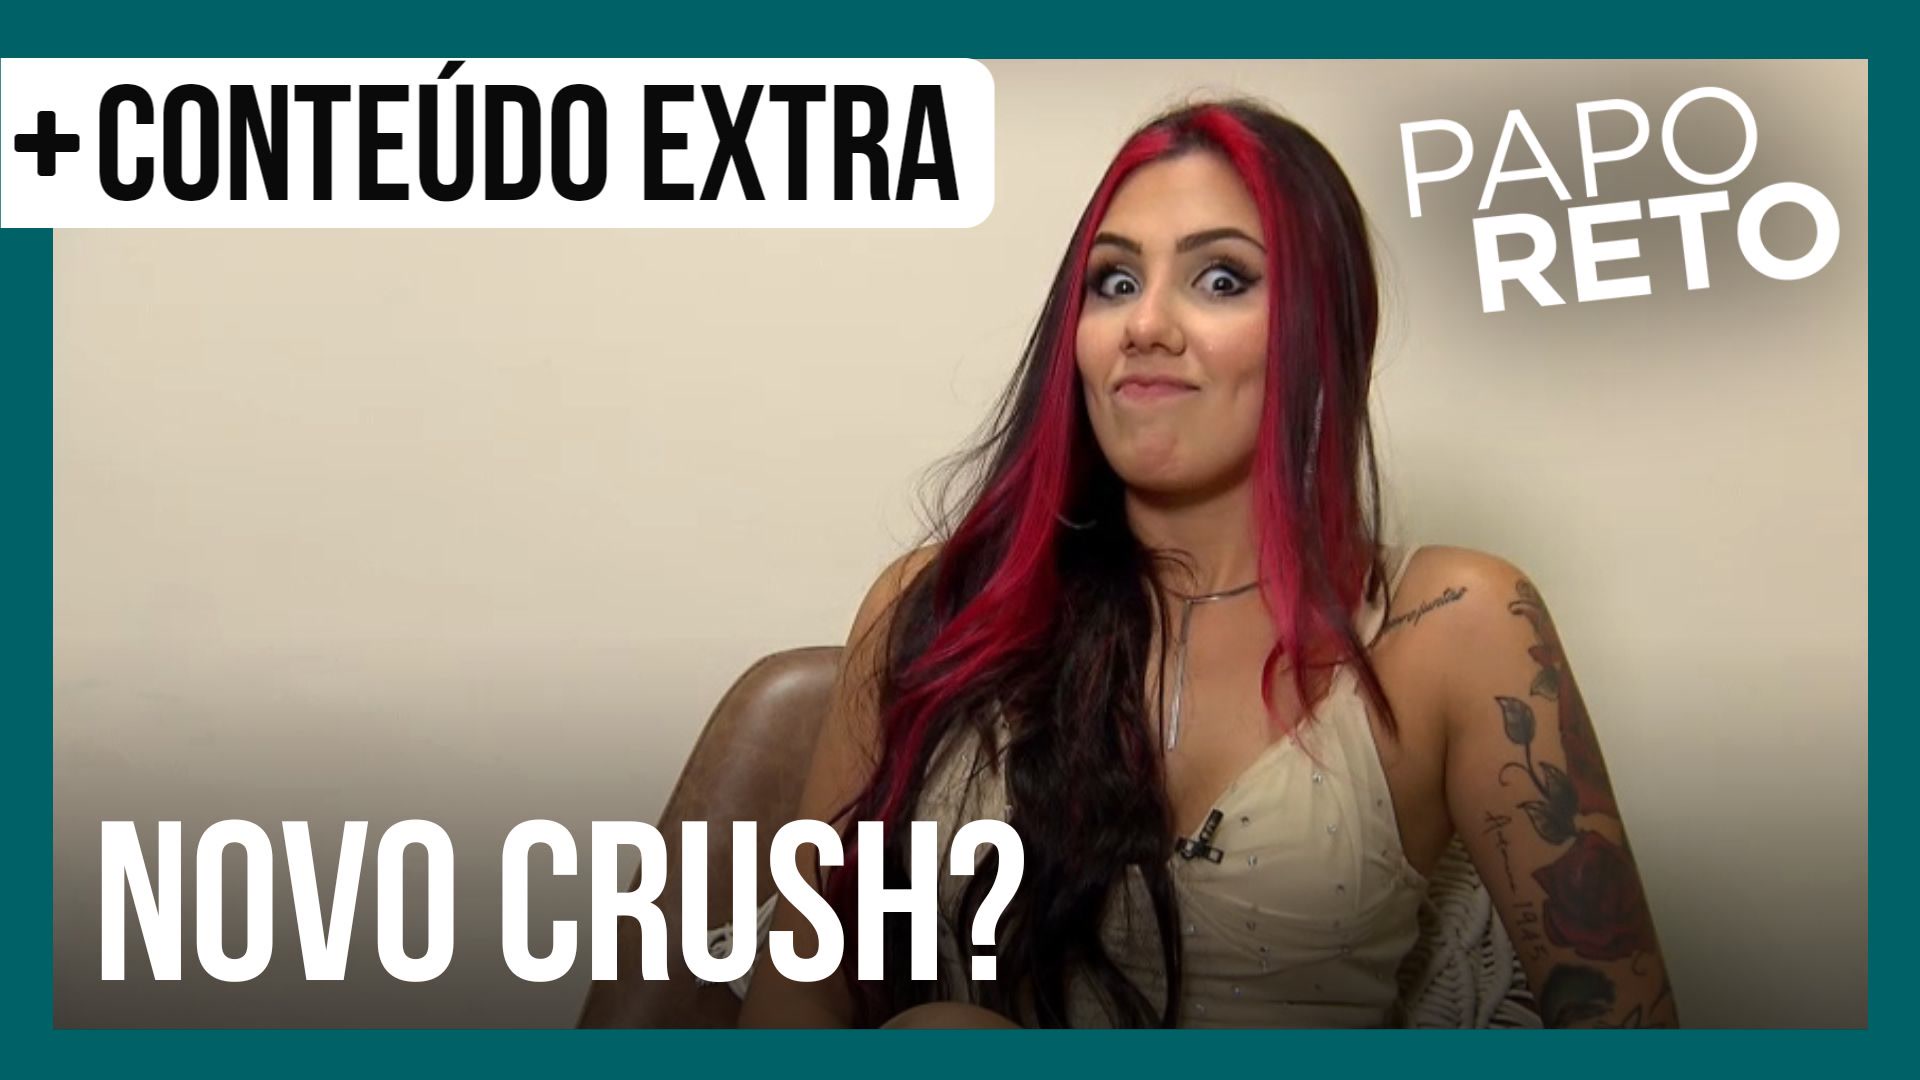 Vídeo: Alicia X revela se já tem um novo crush após término de relacionamento | Papo Reto